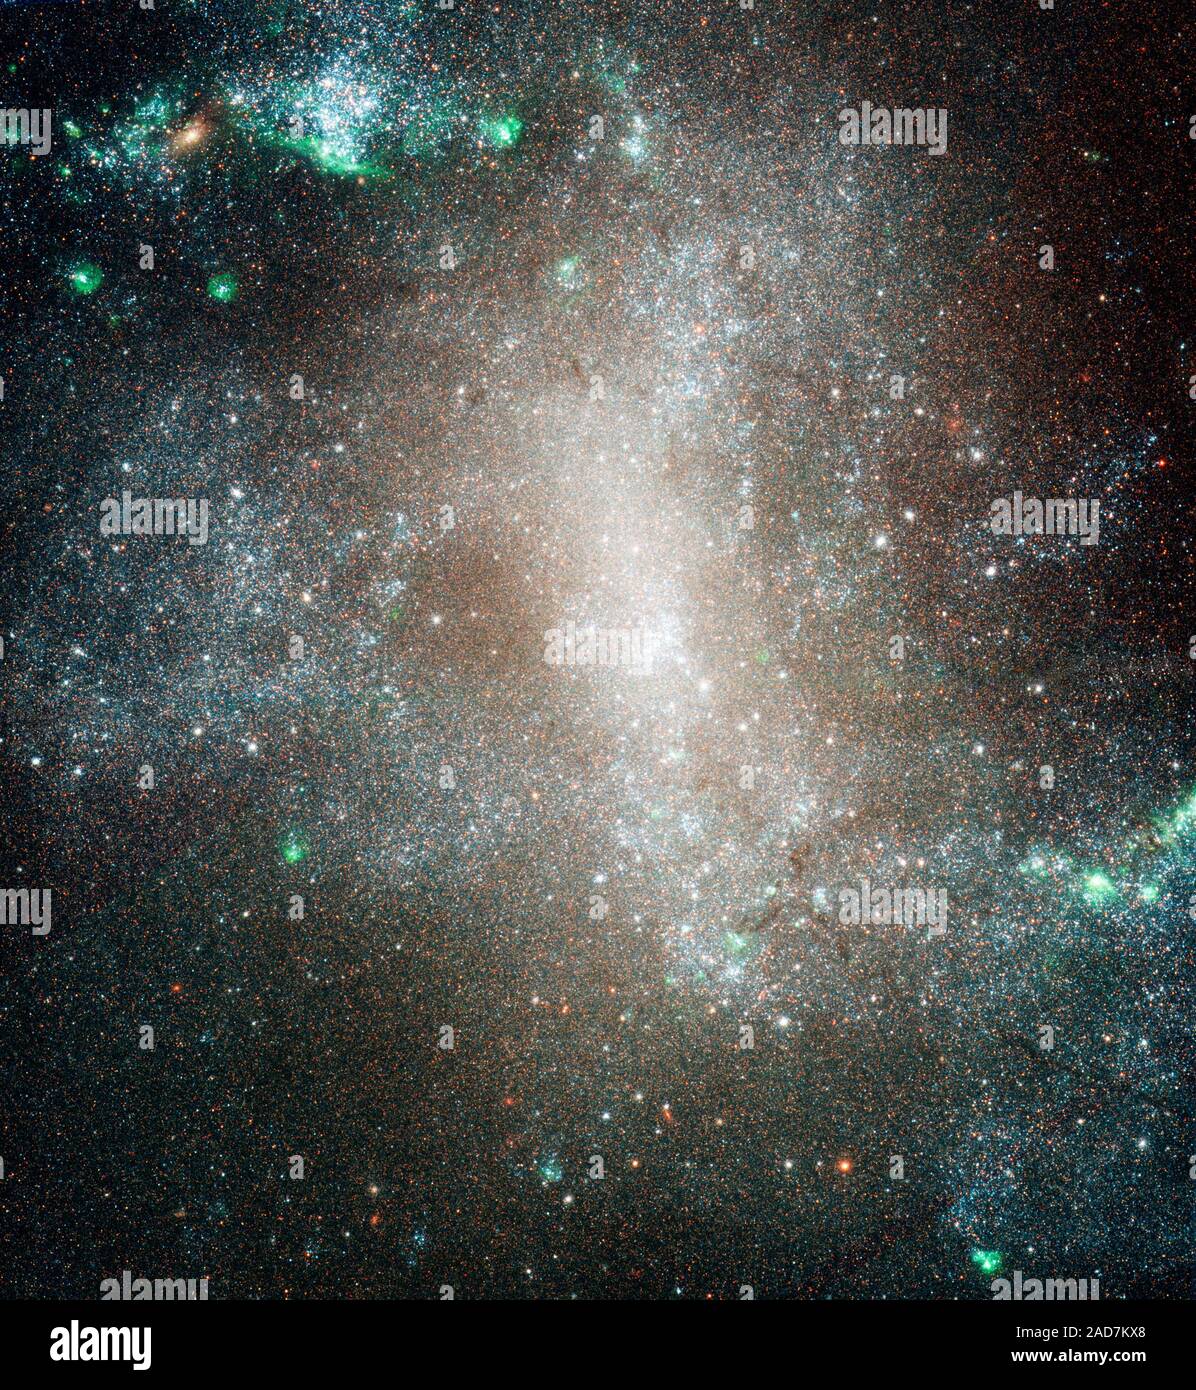 Dies ist ein NASA-Hubble-Weltraumteleskop Bild der zentralen Region der Spiralgalaxie NGC 1313. Hubble wurde verwendet, um Sterne in der Galaxie eine Zählung der verschiedenen Klassen der Sterne in der Galaxie verteilt zu tun zu lösen. Die Beobachtungen zeigen, dass heiße blaue Sterne (von Klasse B) sind weit über die Galaxie verstreut. Dies ist ein Beweis für "säuglingssterblichkeit", in der der Junge, der so genannten offenen Sternhaufen, wo Sterne geboren werden, wurde schnell gravitativ' Batterieinnere freigelegt" und ihre Bewohner Sterne in der Galaxie verstreut. NGC 1313 ist 50.000 Lichtjahre und liegt 14 Millionen Lichtjahre entfernten Stockfoto